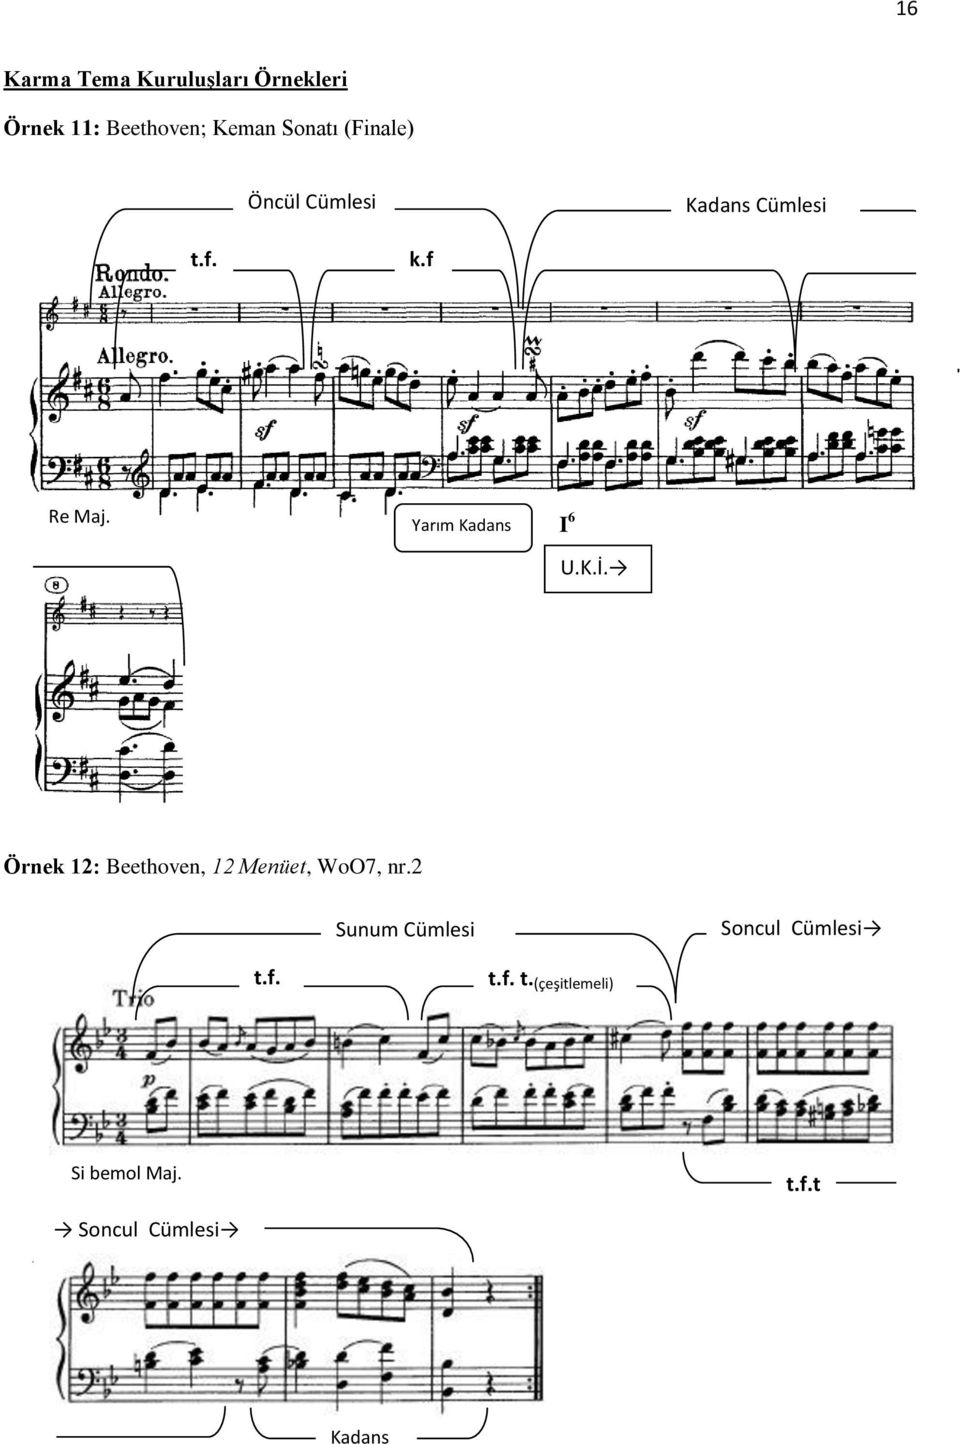 K.İ. Örnek 12: Beethoven, 12 Menüet, WoO7, nr.